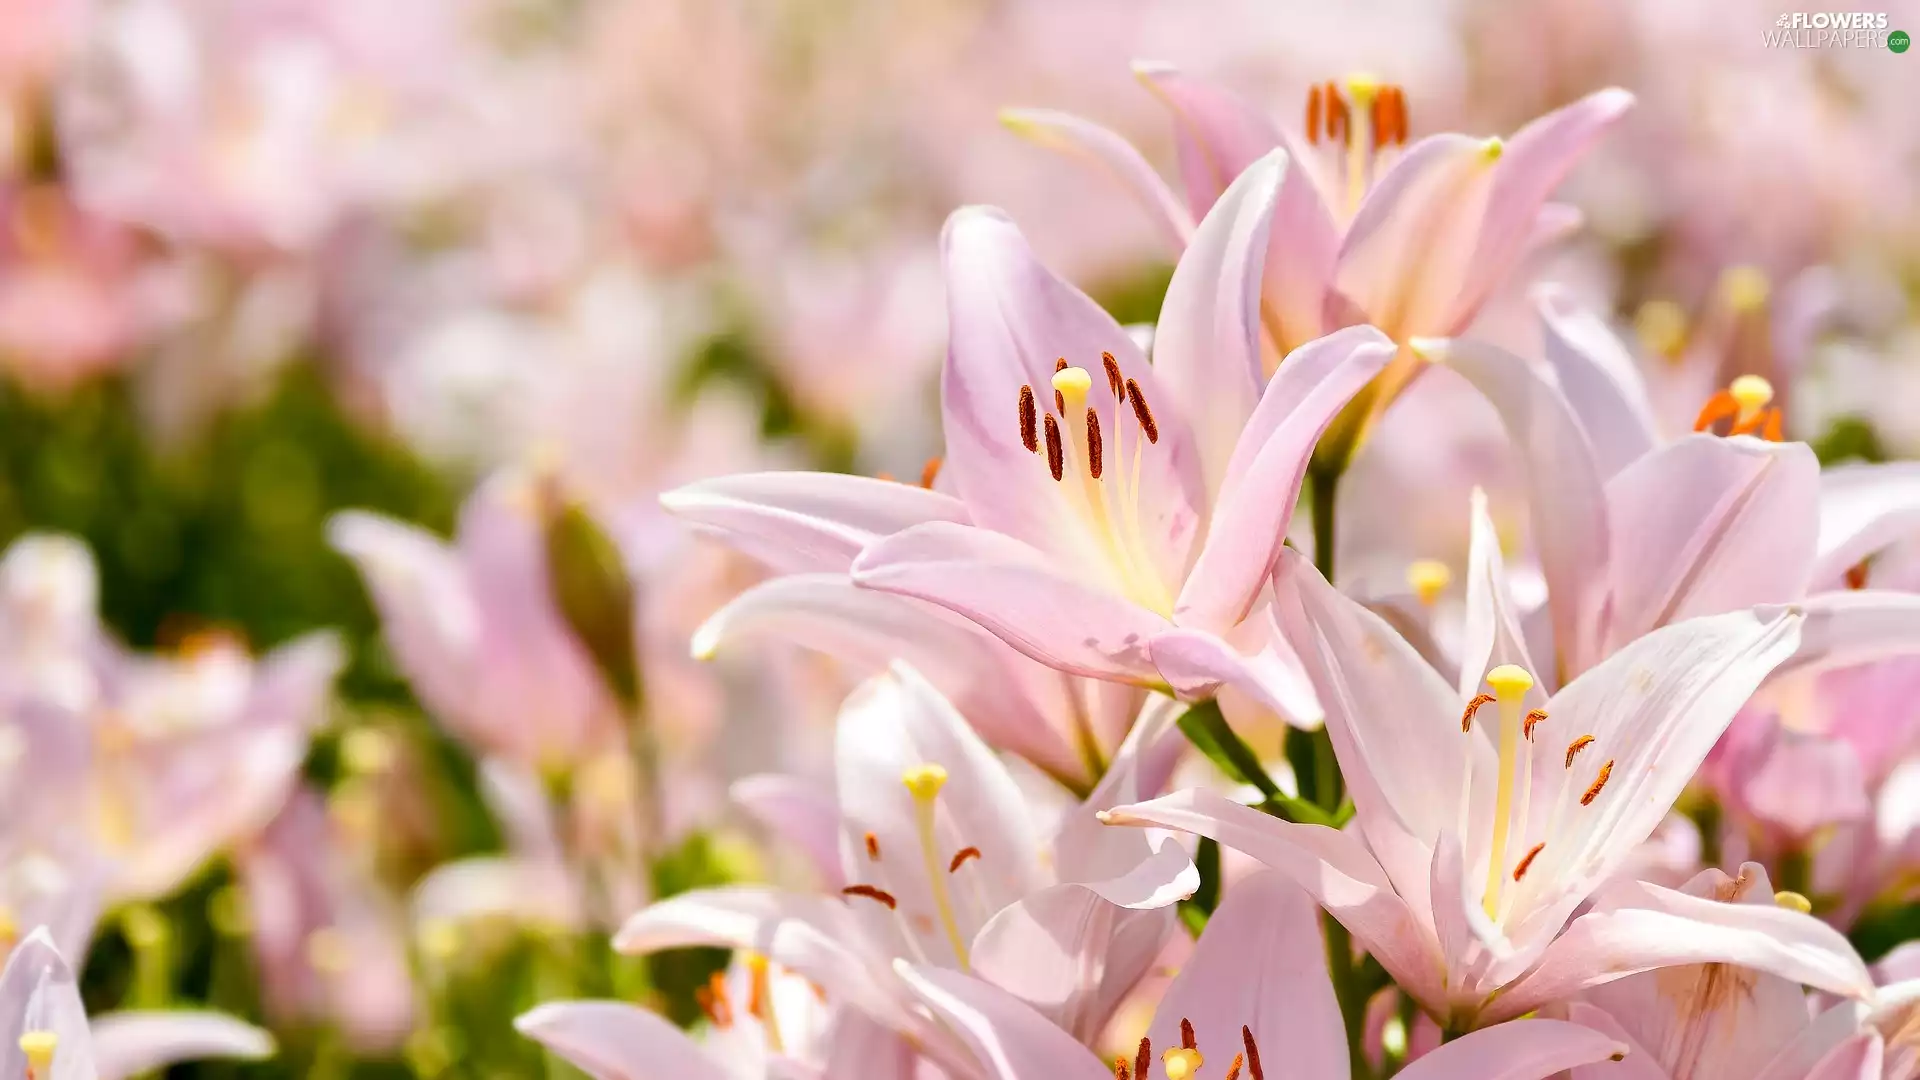 Light pink, lilies